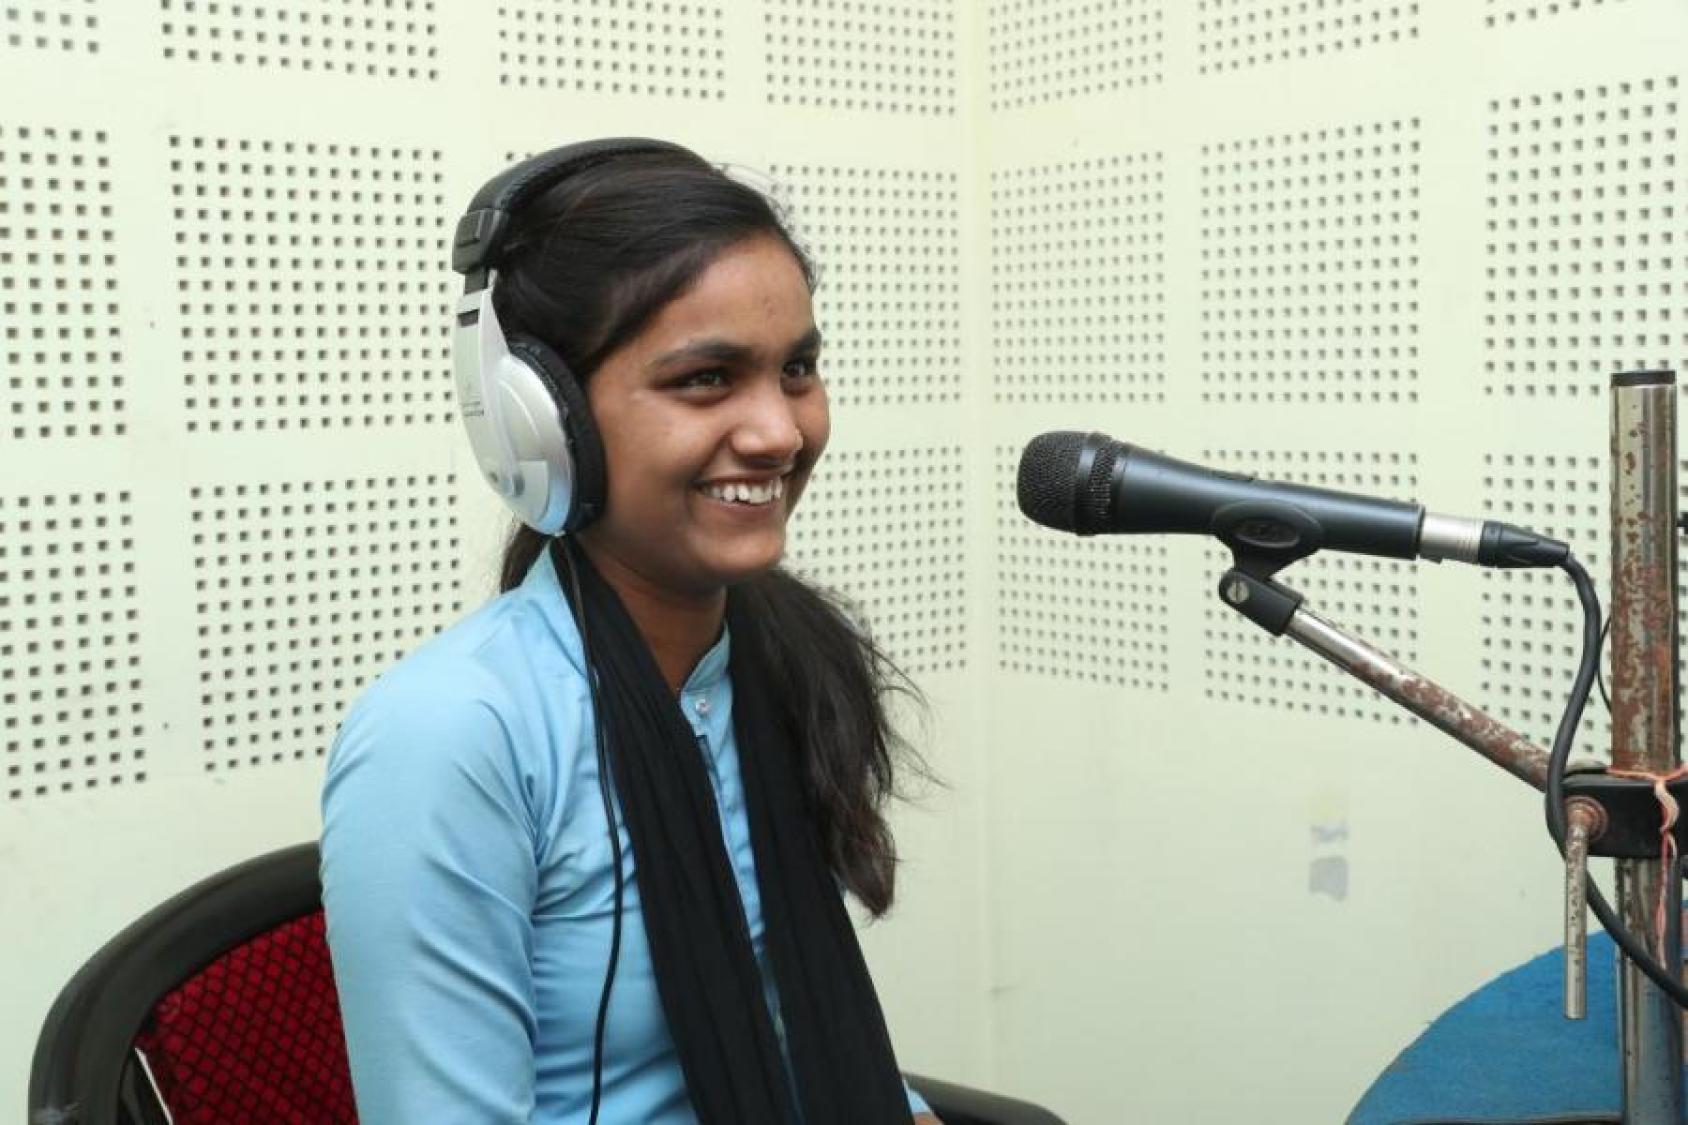 Una chica en un estudio tiene los auriculares puestos y sonríe al micrófono que tiene cerca de su boca.